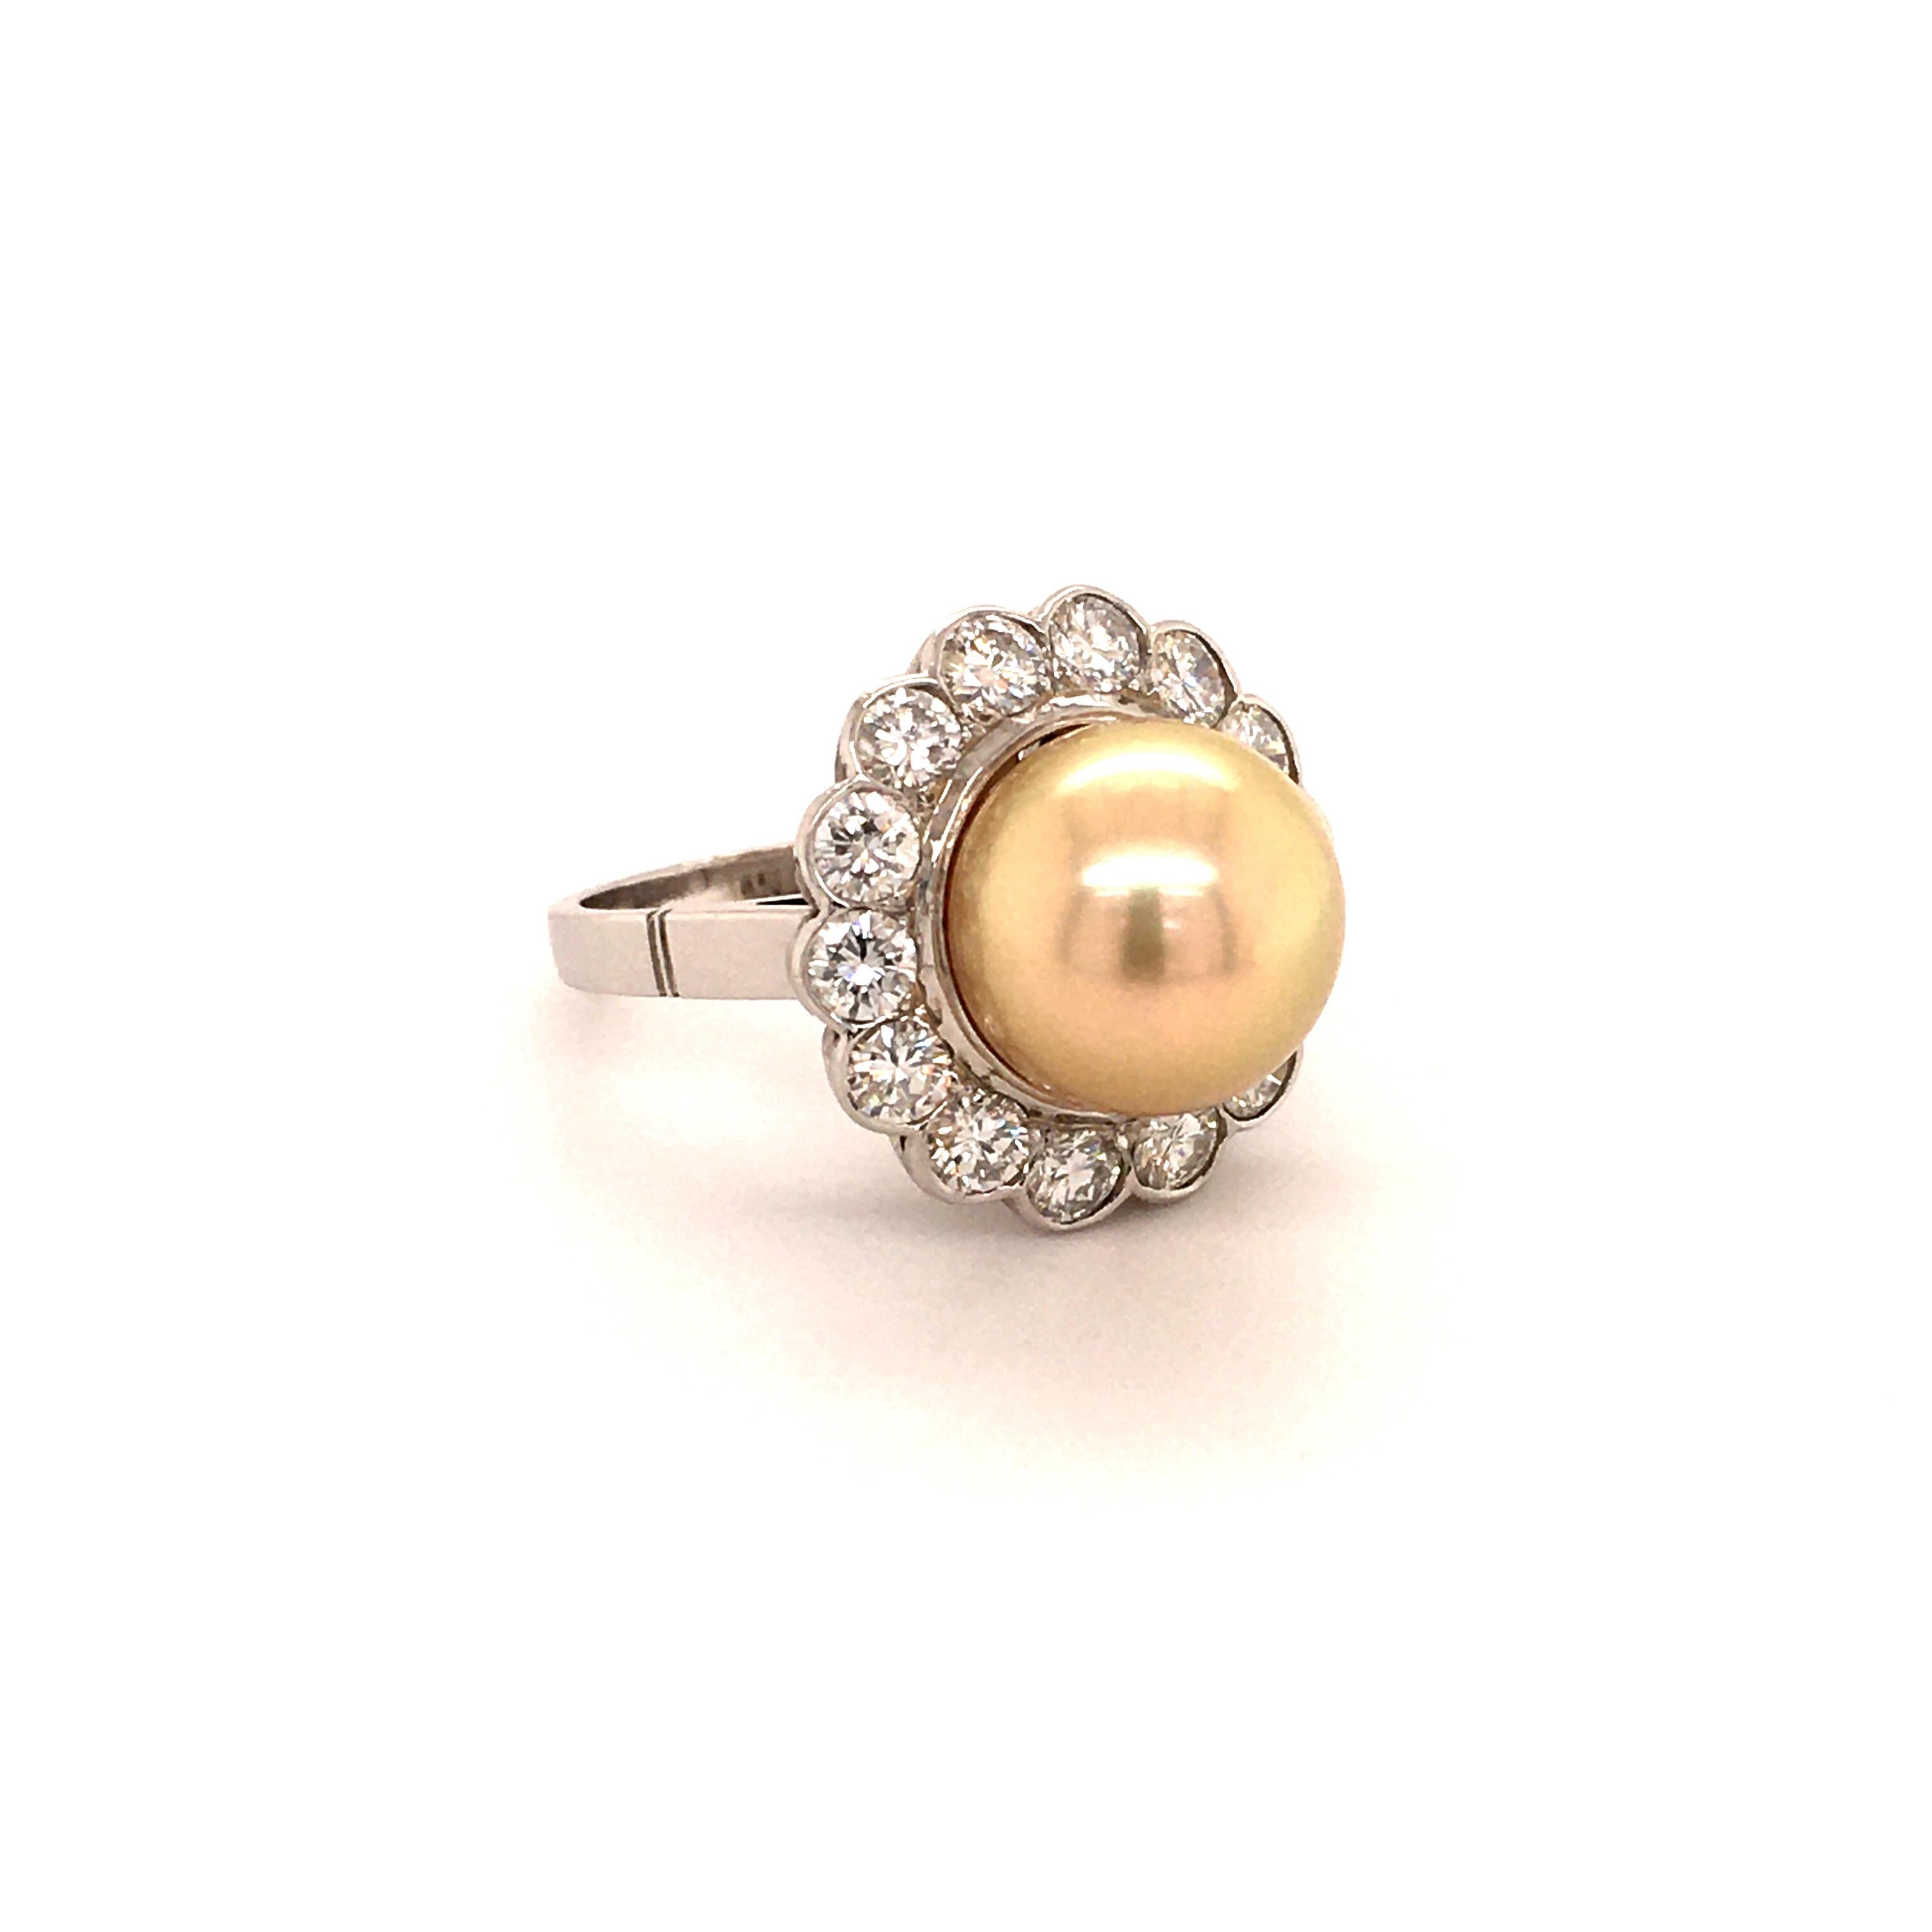 Dieser elegante Ring aus 14-karätigem Weißgold enthält eine wunderschöne goldfarbene, runde Südsee-Zuchtperle mit einem Durchmesser von 12,0 mm. Die Oberfläche der Perle ist sauber und hat einen hervorragenden Glanz. Umgeben von 14 Diamanten im